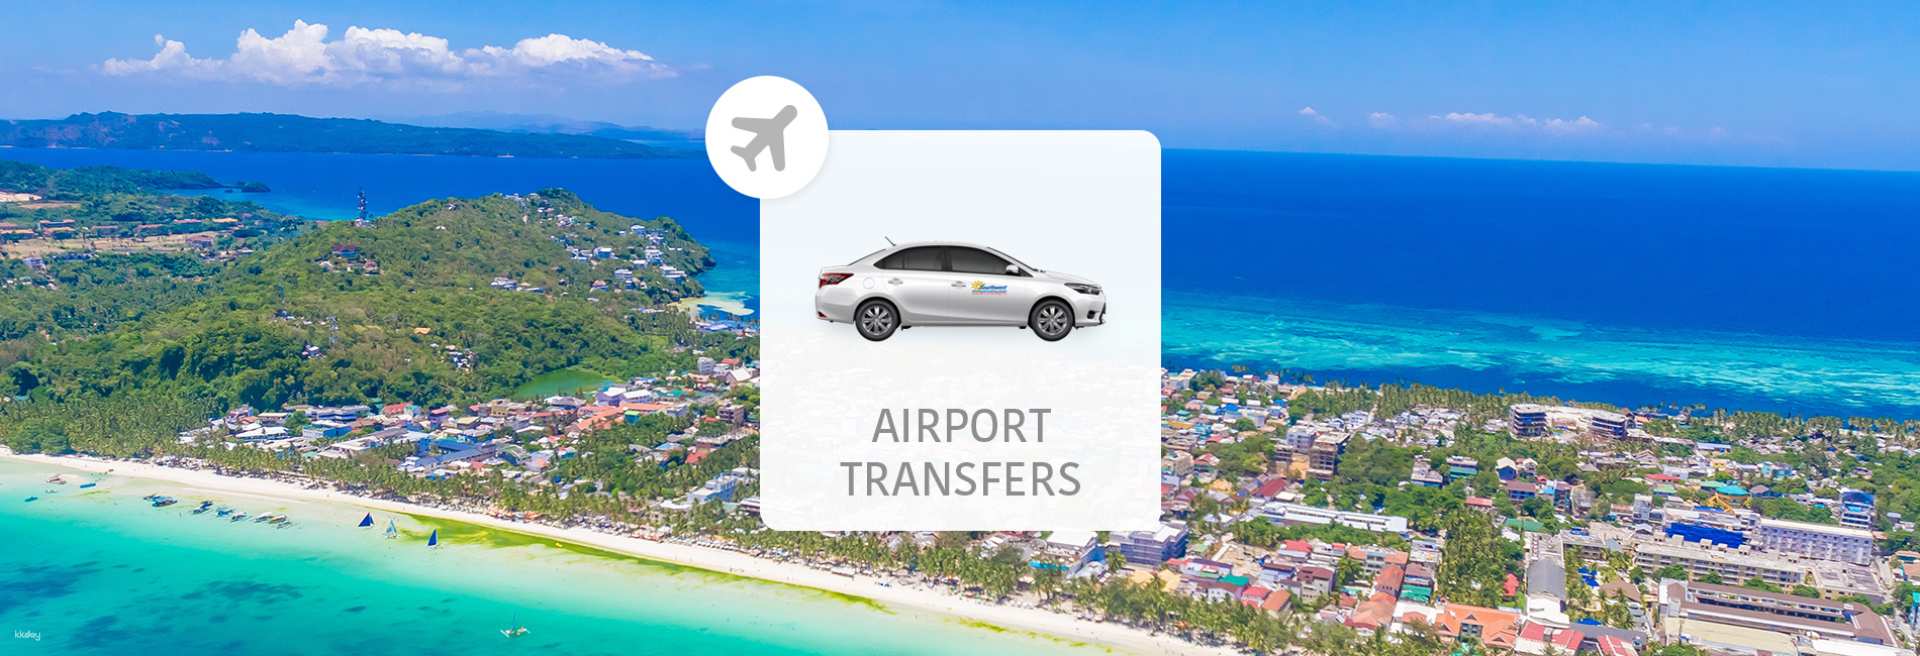 菲律賓-卡蒂克蘭機場(MPH)長灘島市區飯店 | 24 小時機場接送轉乘| 拼車的接送服務